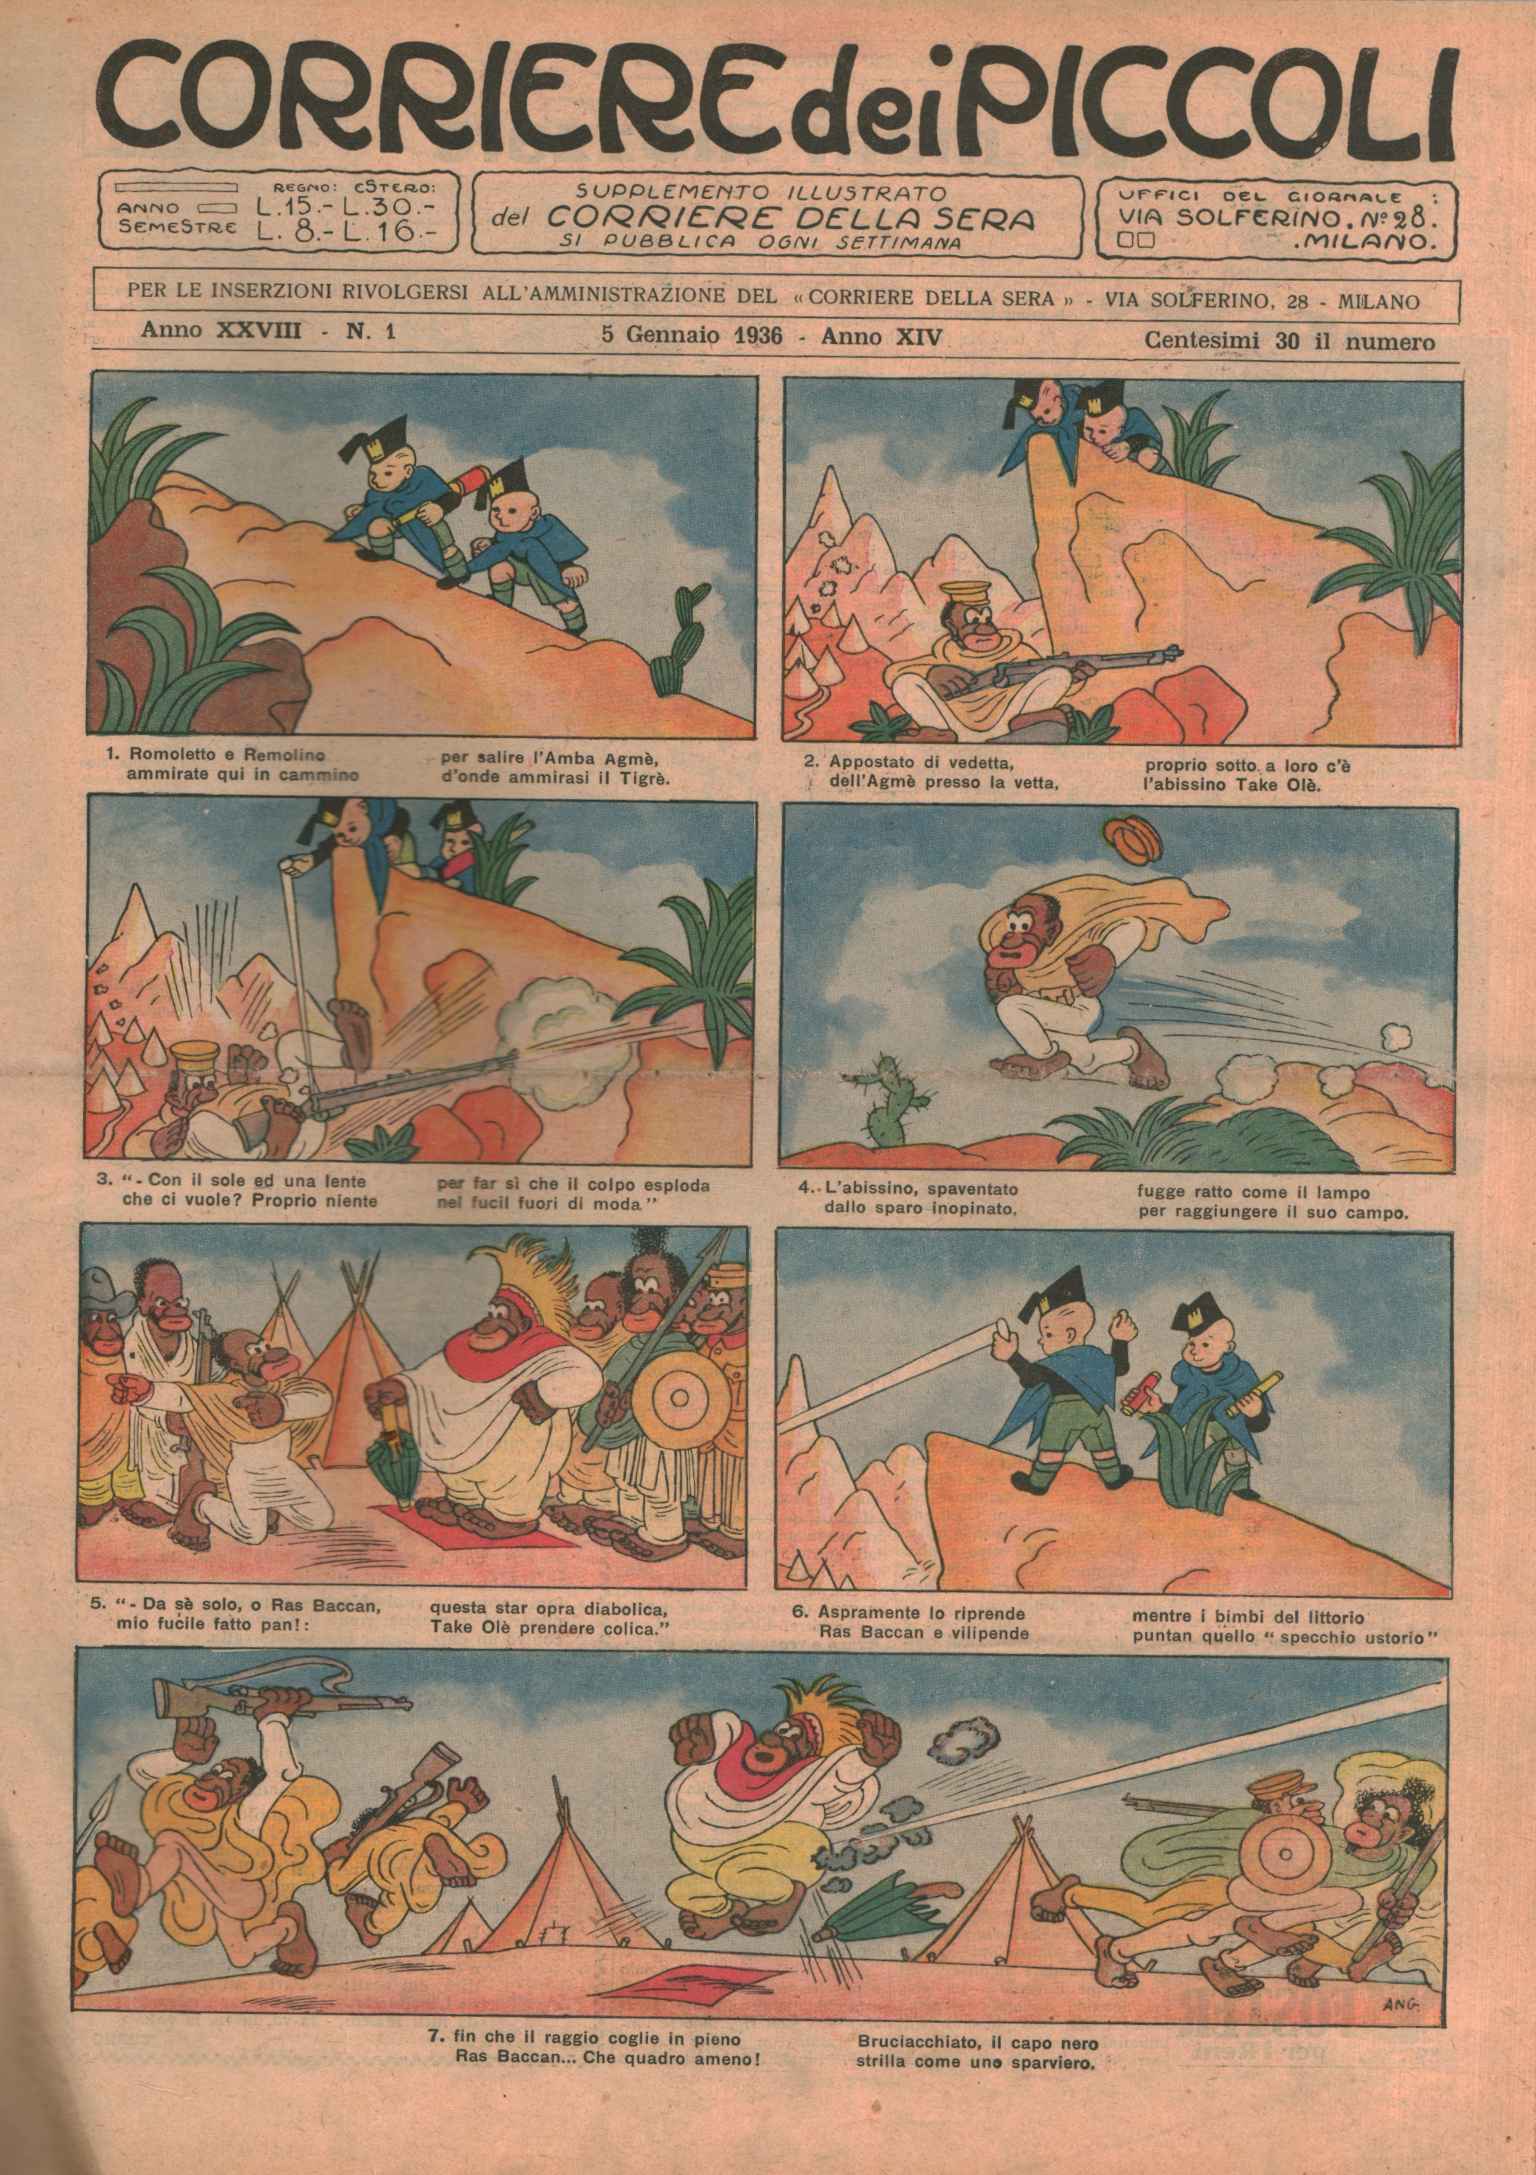 Corriere dei piccolo 1936 (52 Ausgaben -, Corriere dei piccolo 1936. Vollständiger Jahrgang